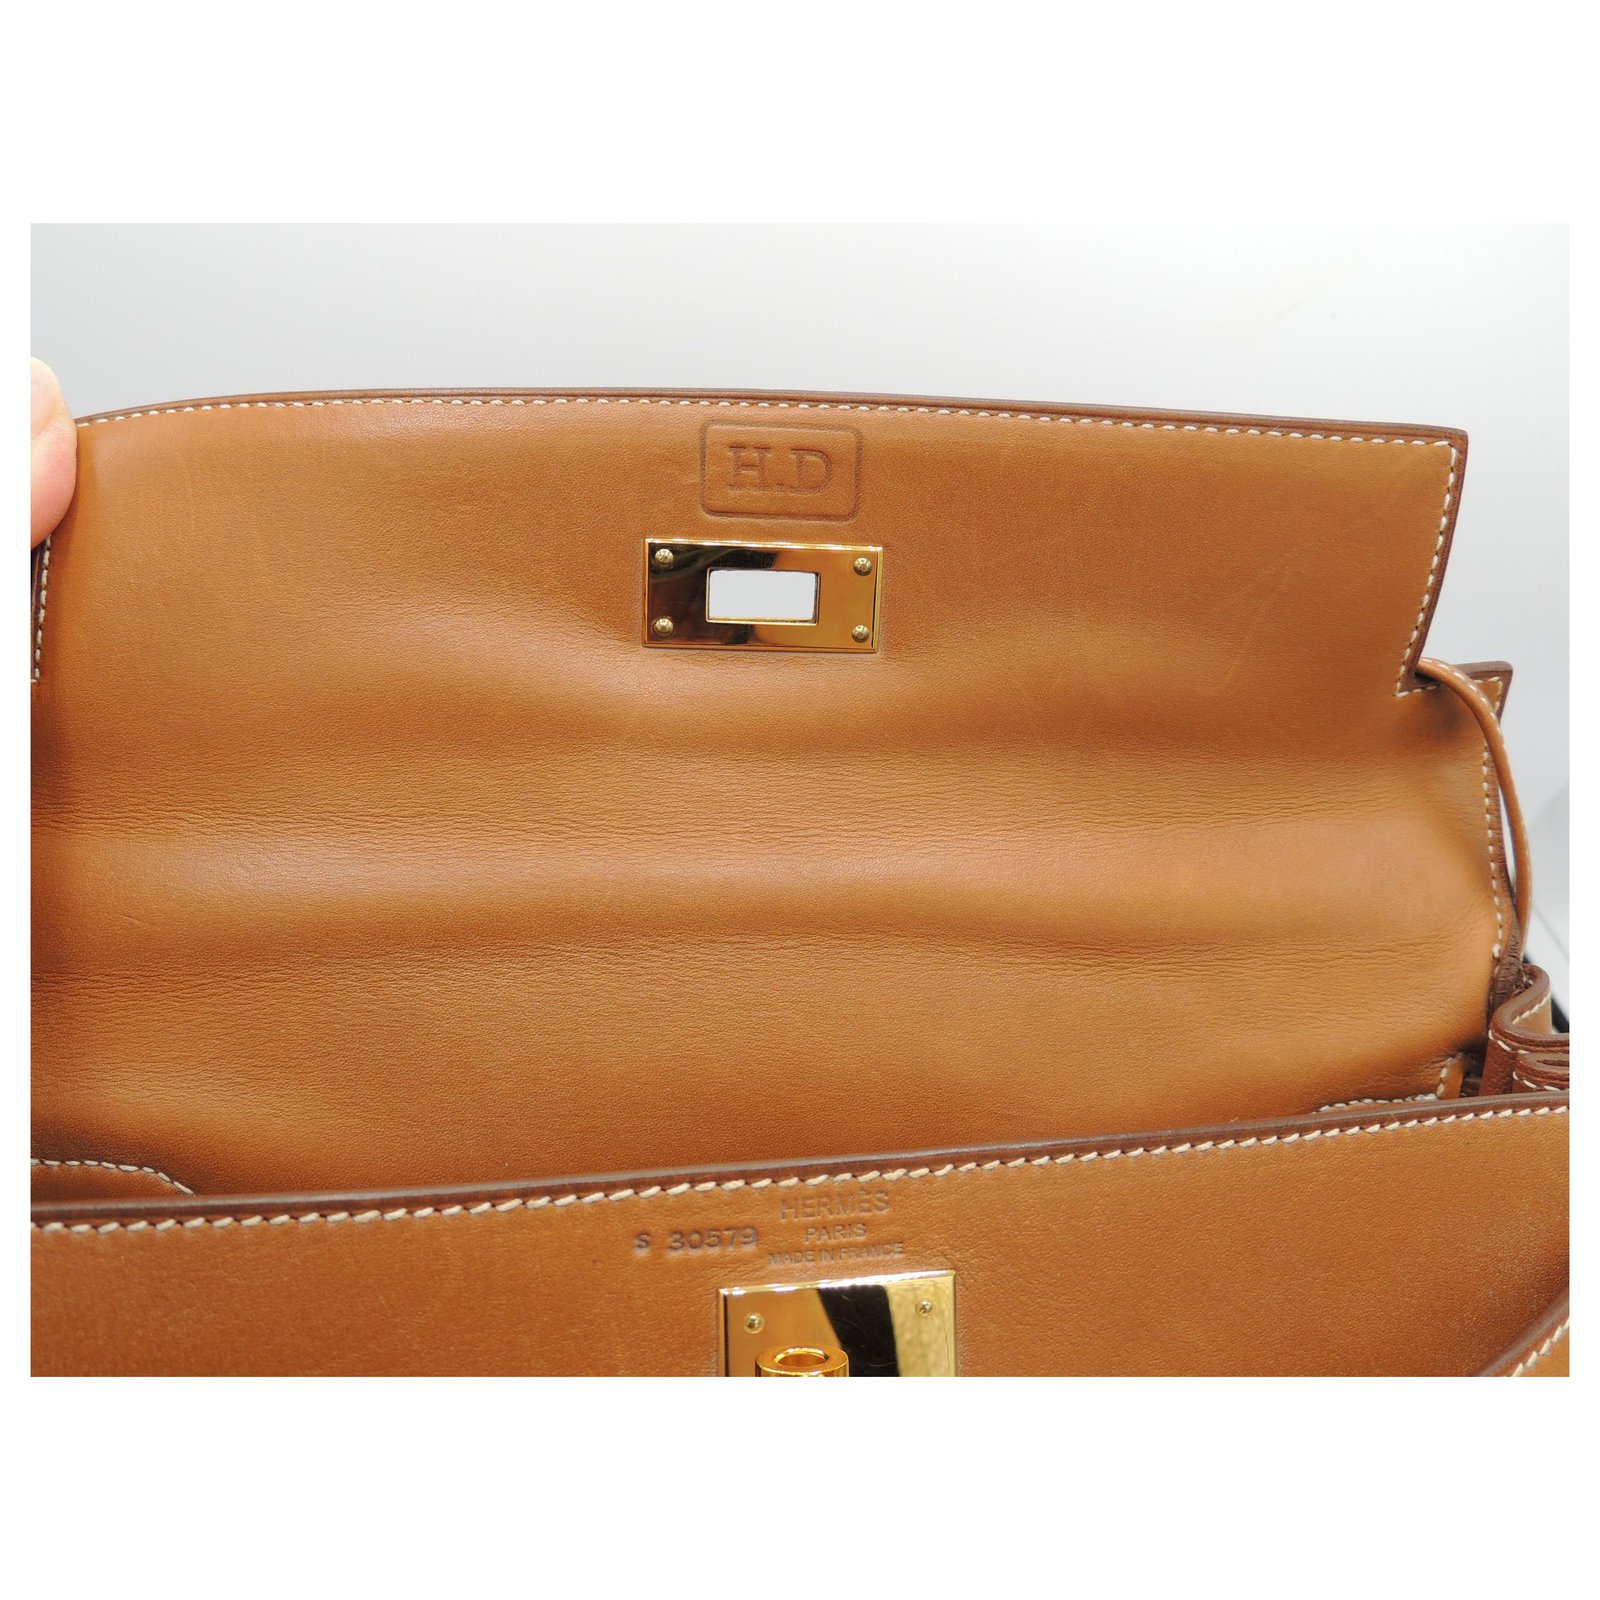 Hermes Kelly 28 Handbag CC34 Fauve Barenia Natural GHW